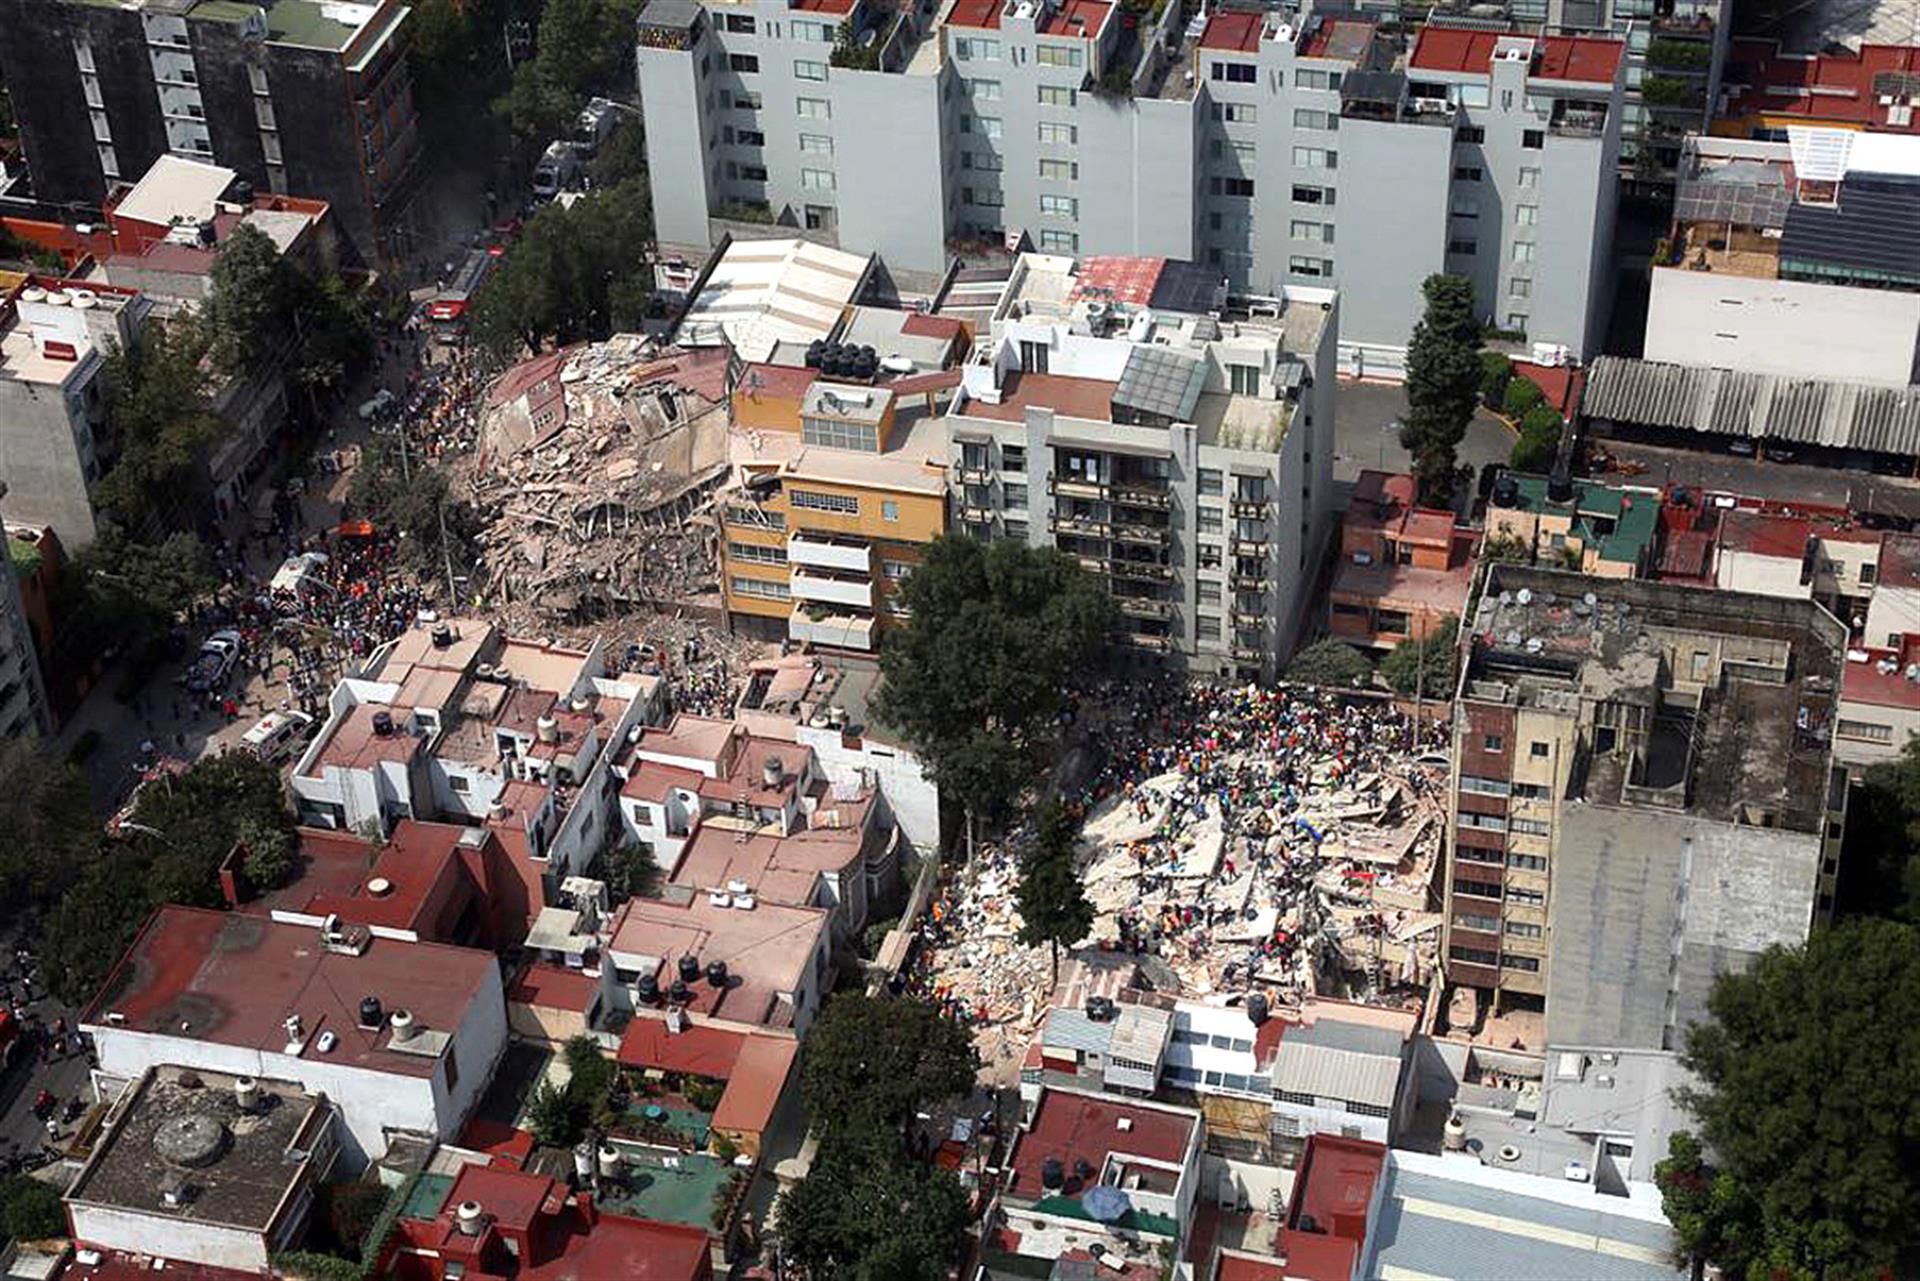 Fotografía aérea de archivo fechada el 19 de septiembre de 2017, que muestra a cientos de personas, entre afectados y rescatistas, después del sismo que afectó la Ciudad de México (México). EFE/STR
